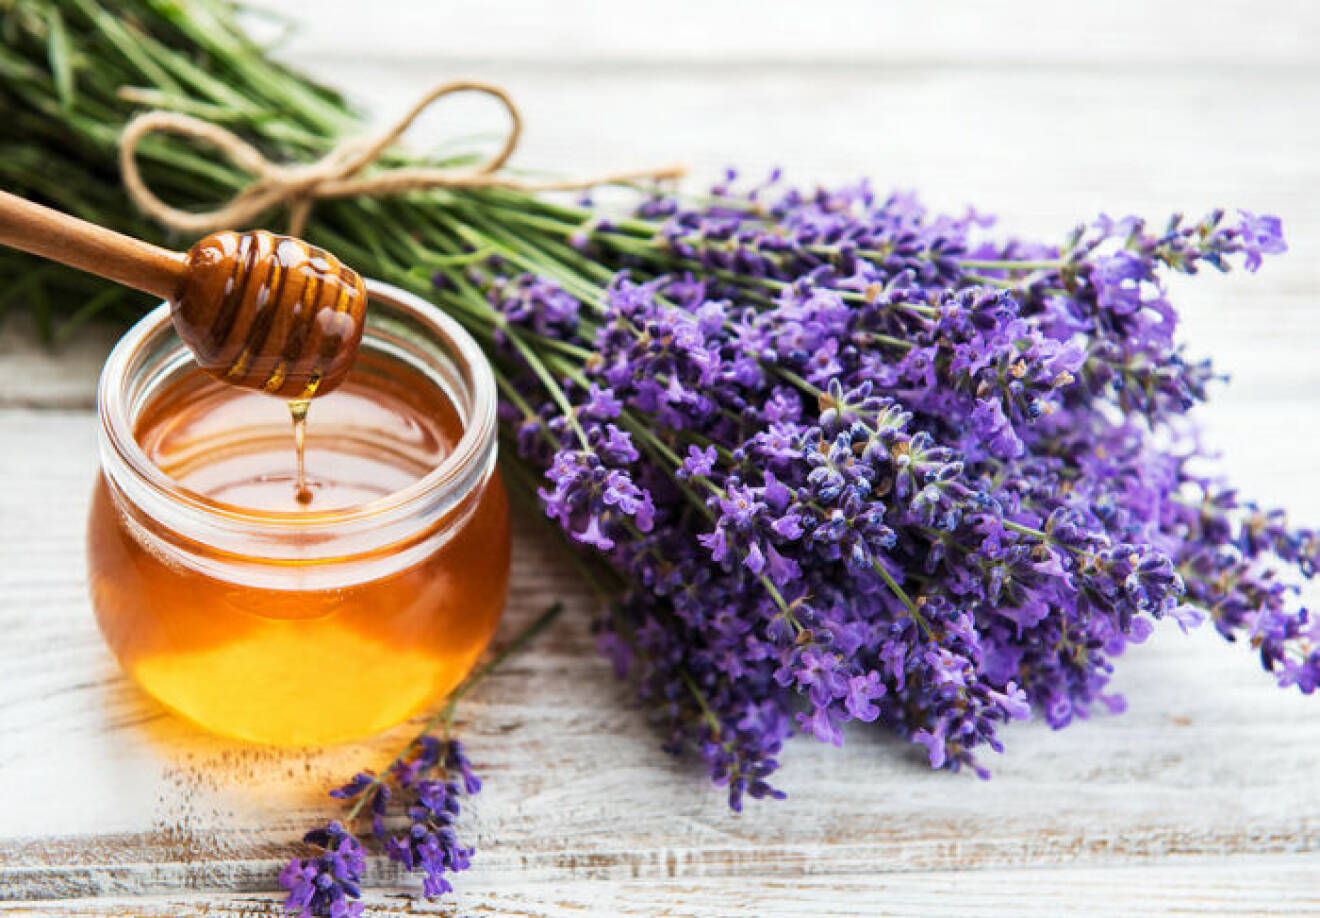 Testa att smaksätta honung med lavendel. 